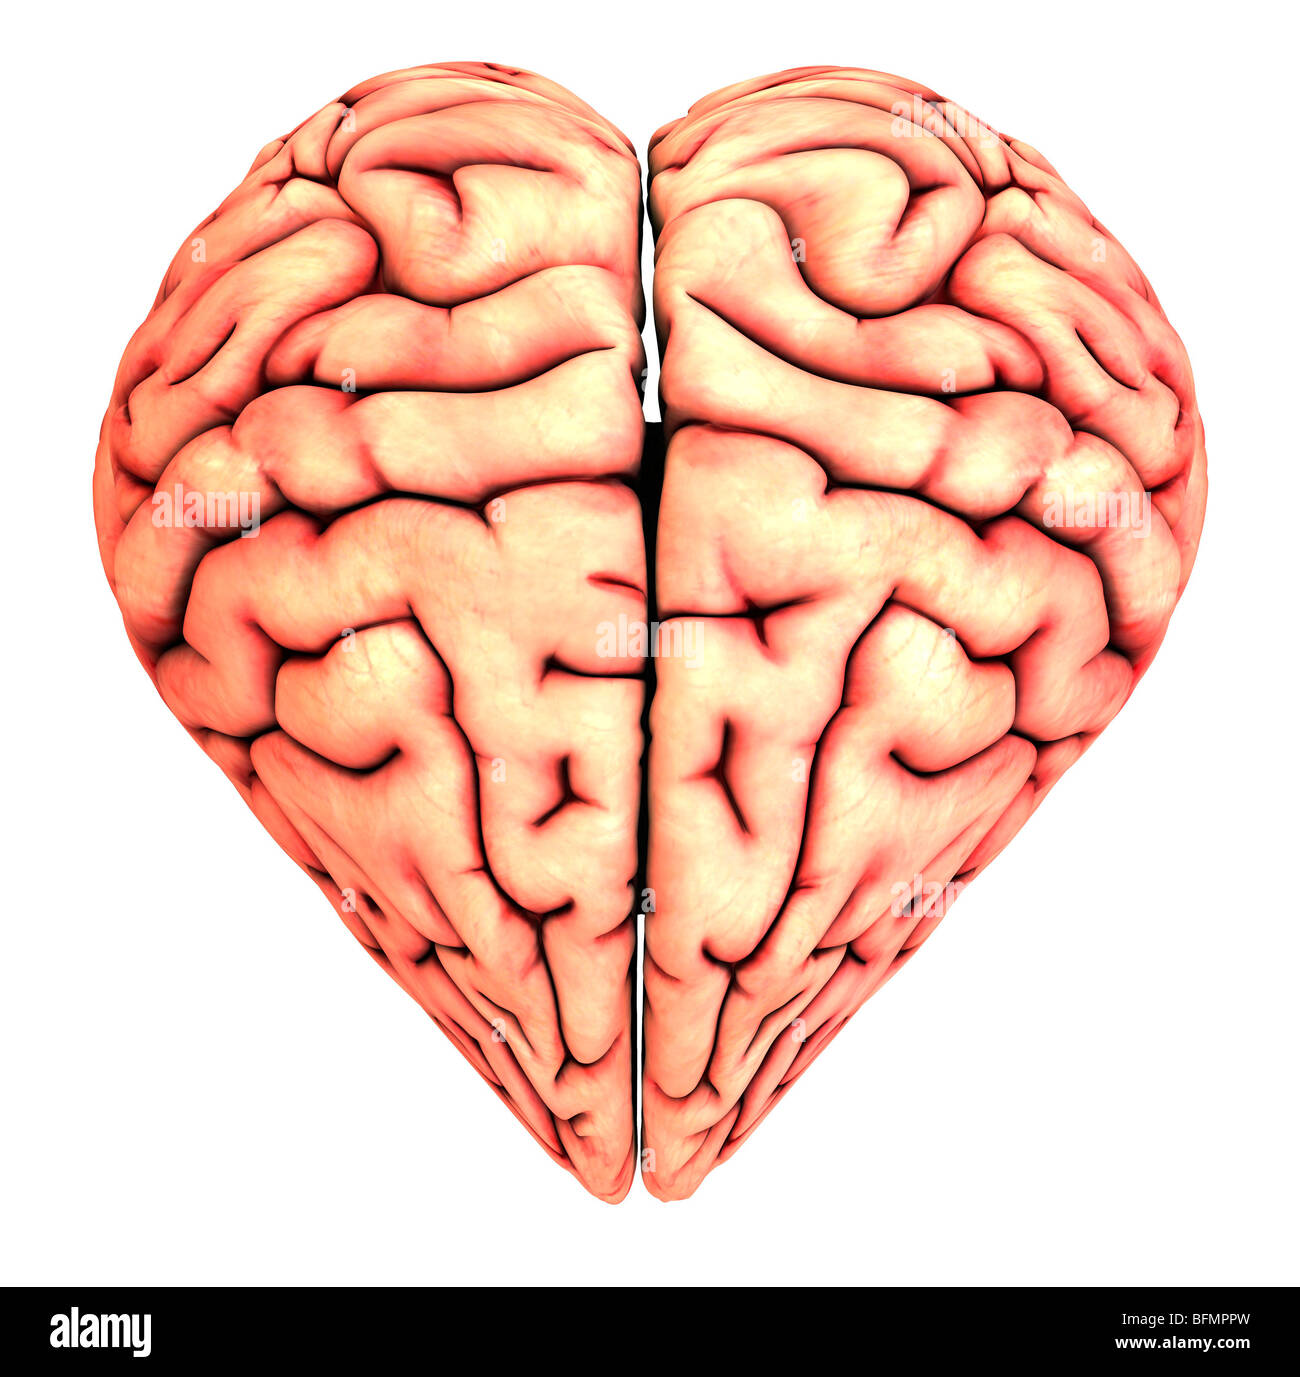 conductor Trastornado Insatisfactorio En forma de corazón, cerebro, obra conceptual Fotografía de stock - Alamy